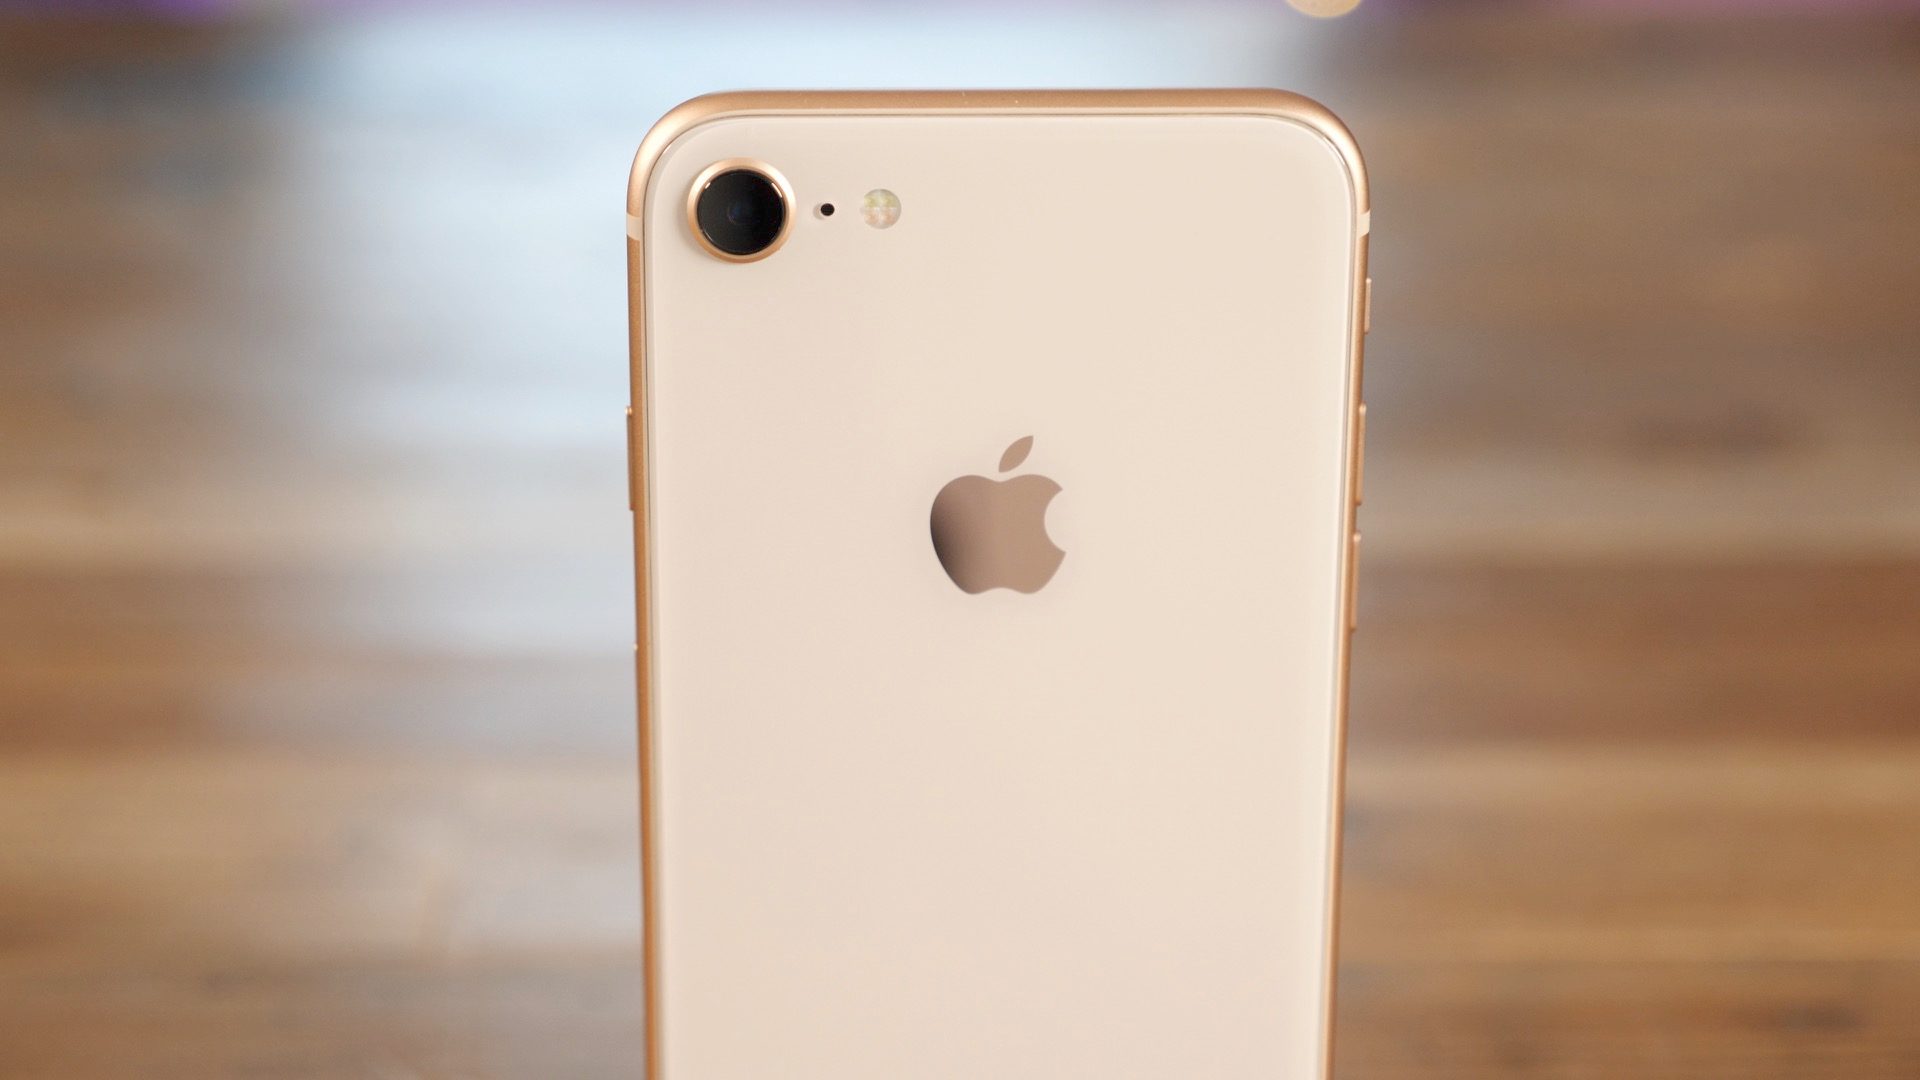 أفضل وأسوأ المزايا لهاتف iPhone 8 و8 Plus - عالم آبل